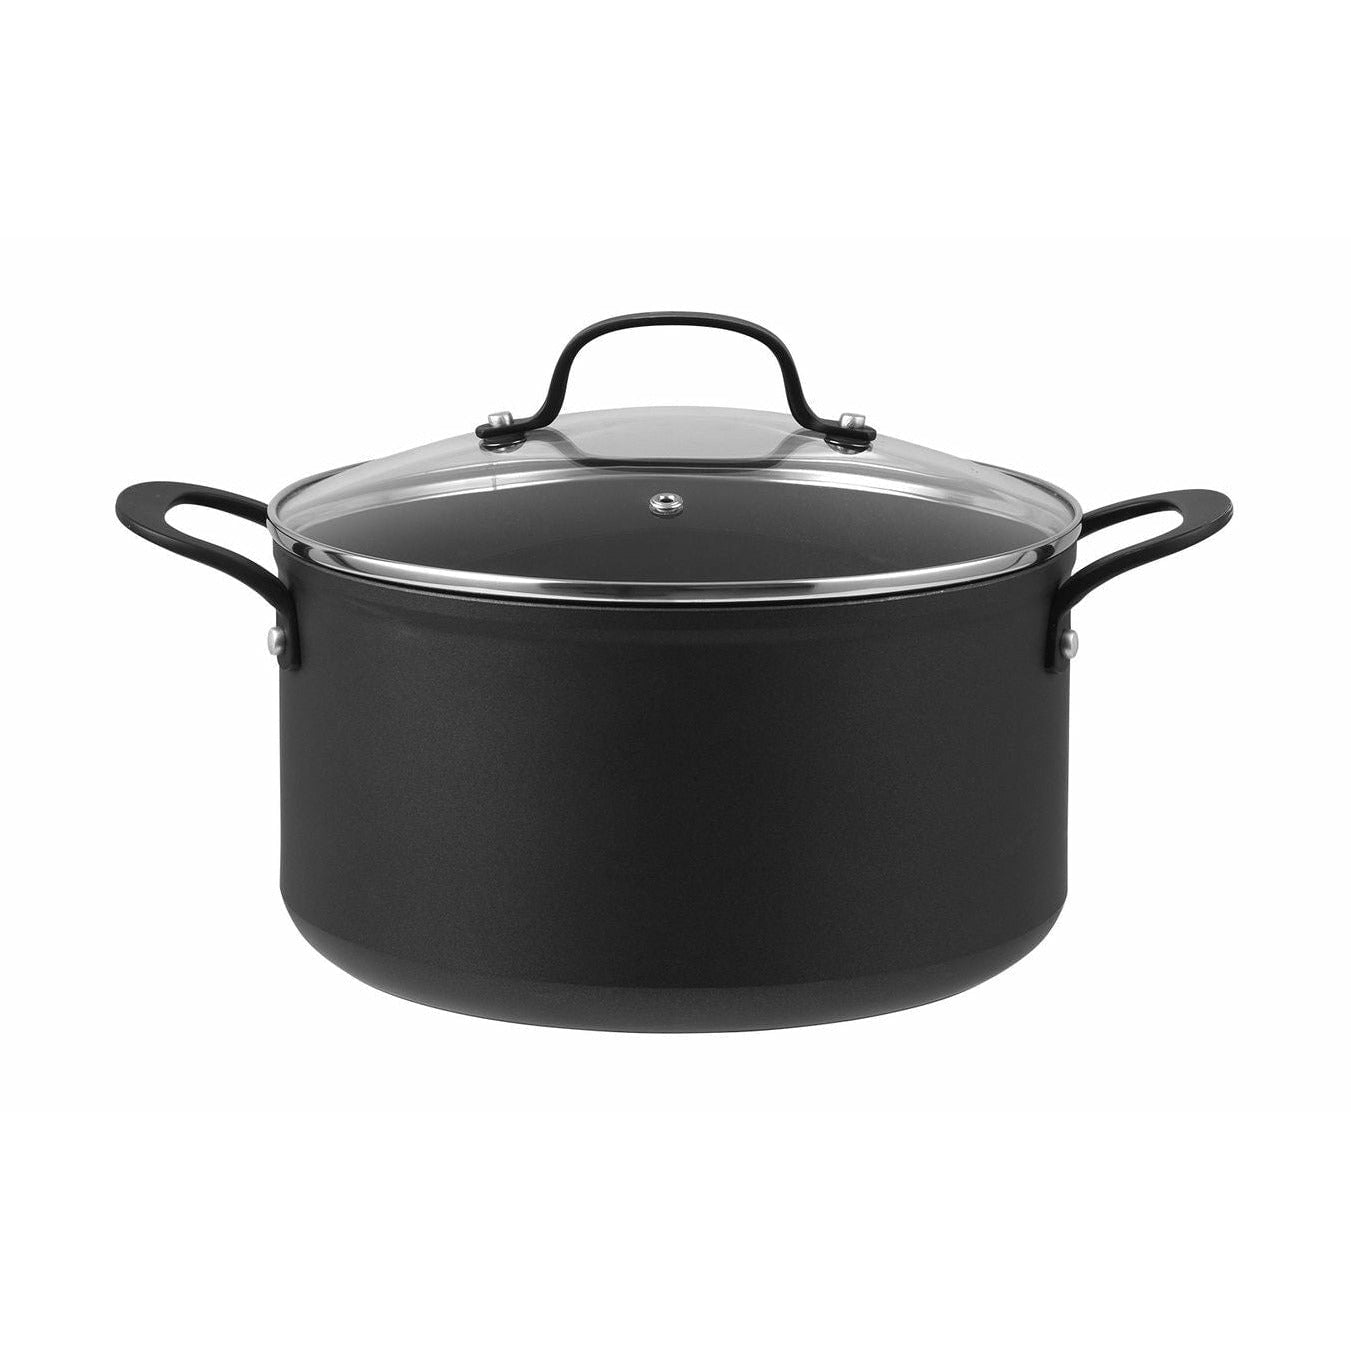 Pot à arc gastronomique pilivuyt avec couvercle en verre Ø 24 cm, noir